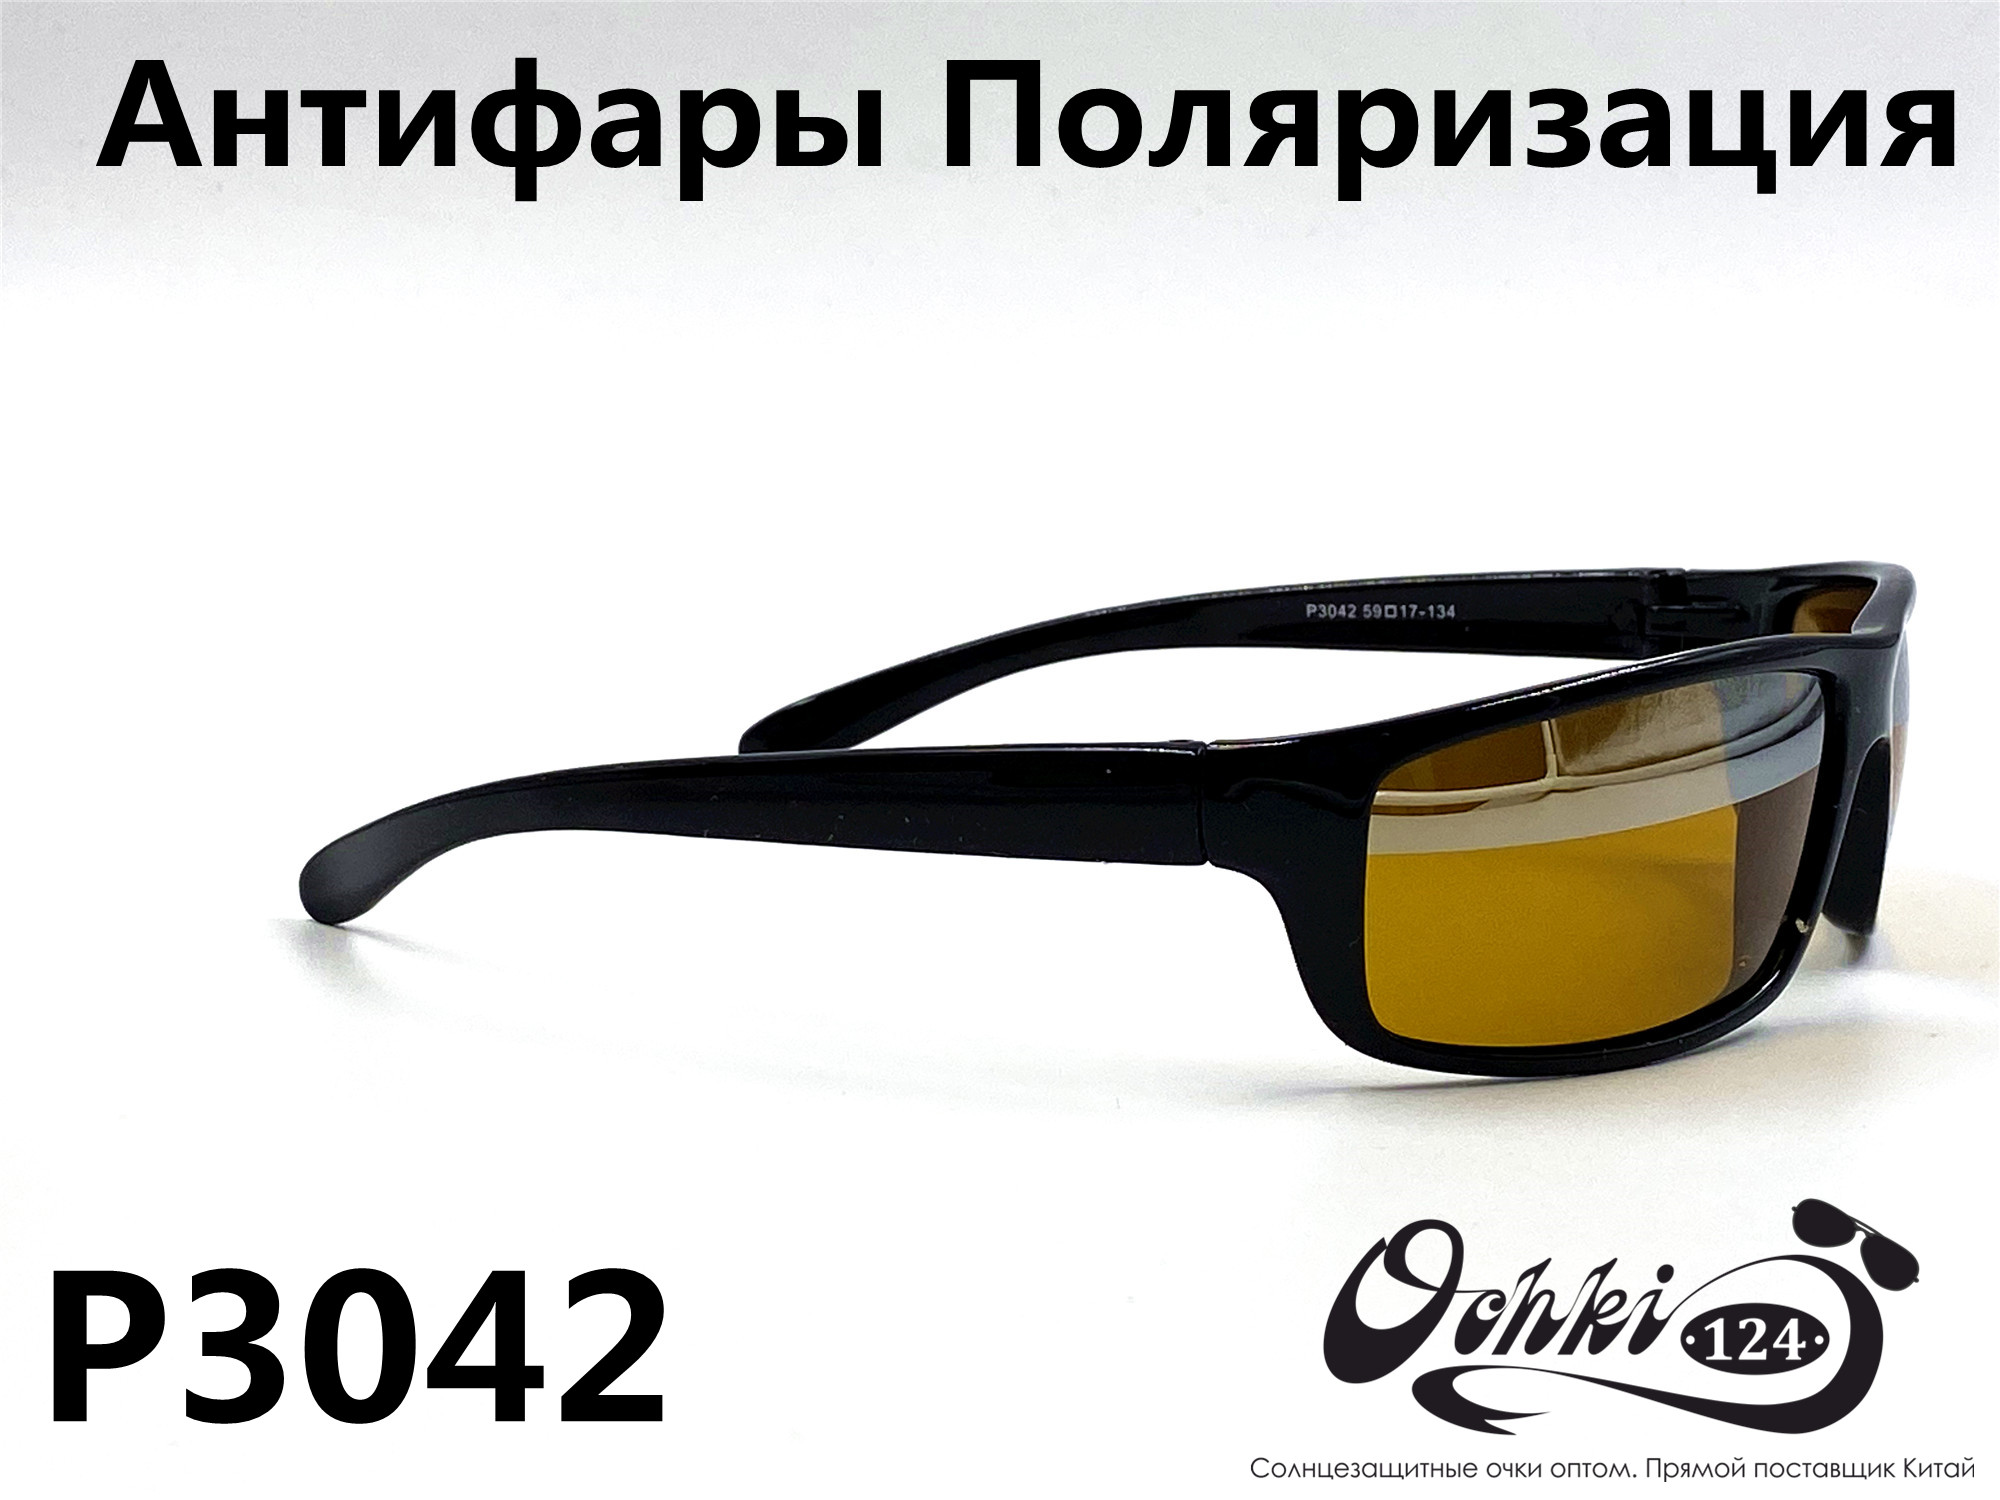  Солнцезащитные очки картинка 2022 Мужские антифары-спорт, с зеркальной полосой, Желтый Polarized P3042-2 